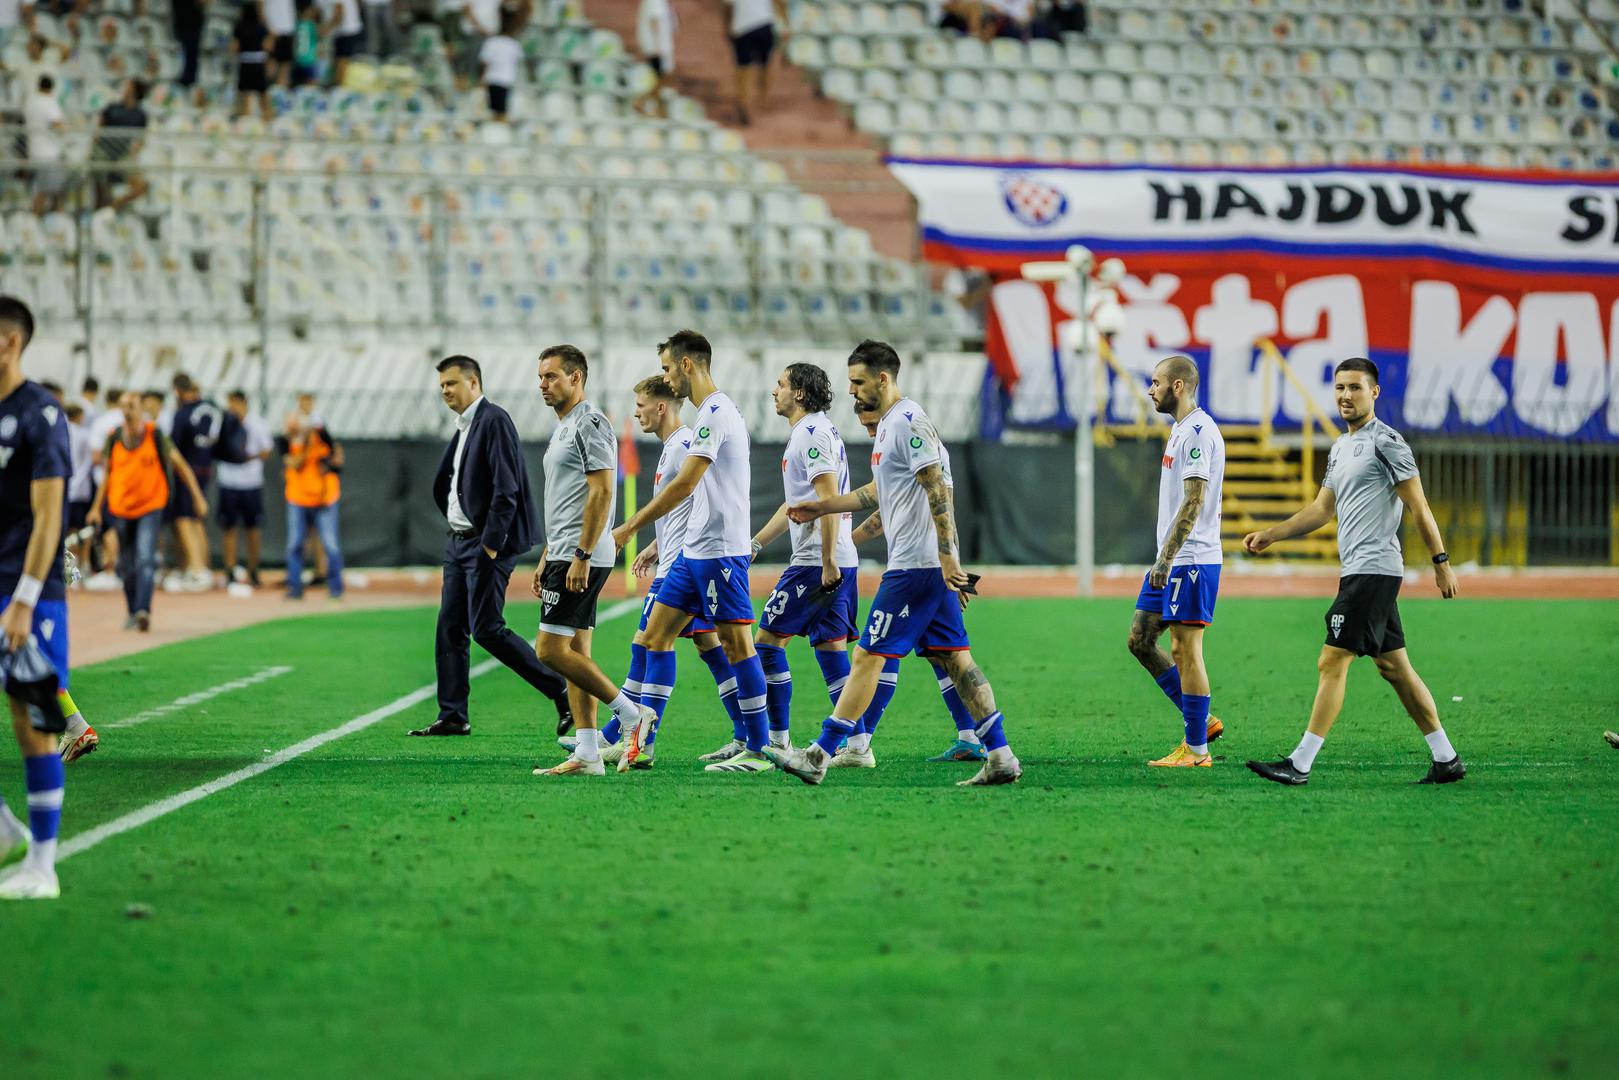 Prvi domaći poraz ove sezone Hajduk je upisao protiv Istre (0:1), a bijeli su pogodak primili u posljednjim trenucima utakmice.